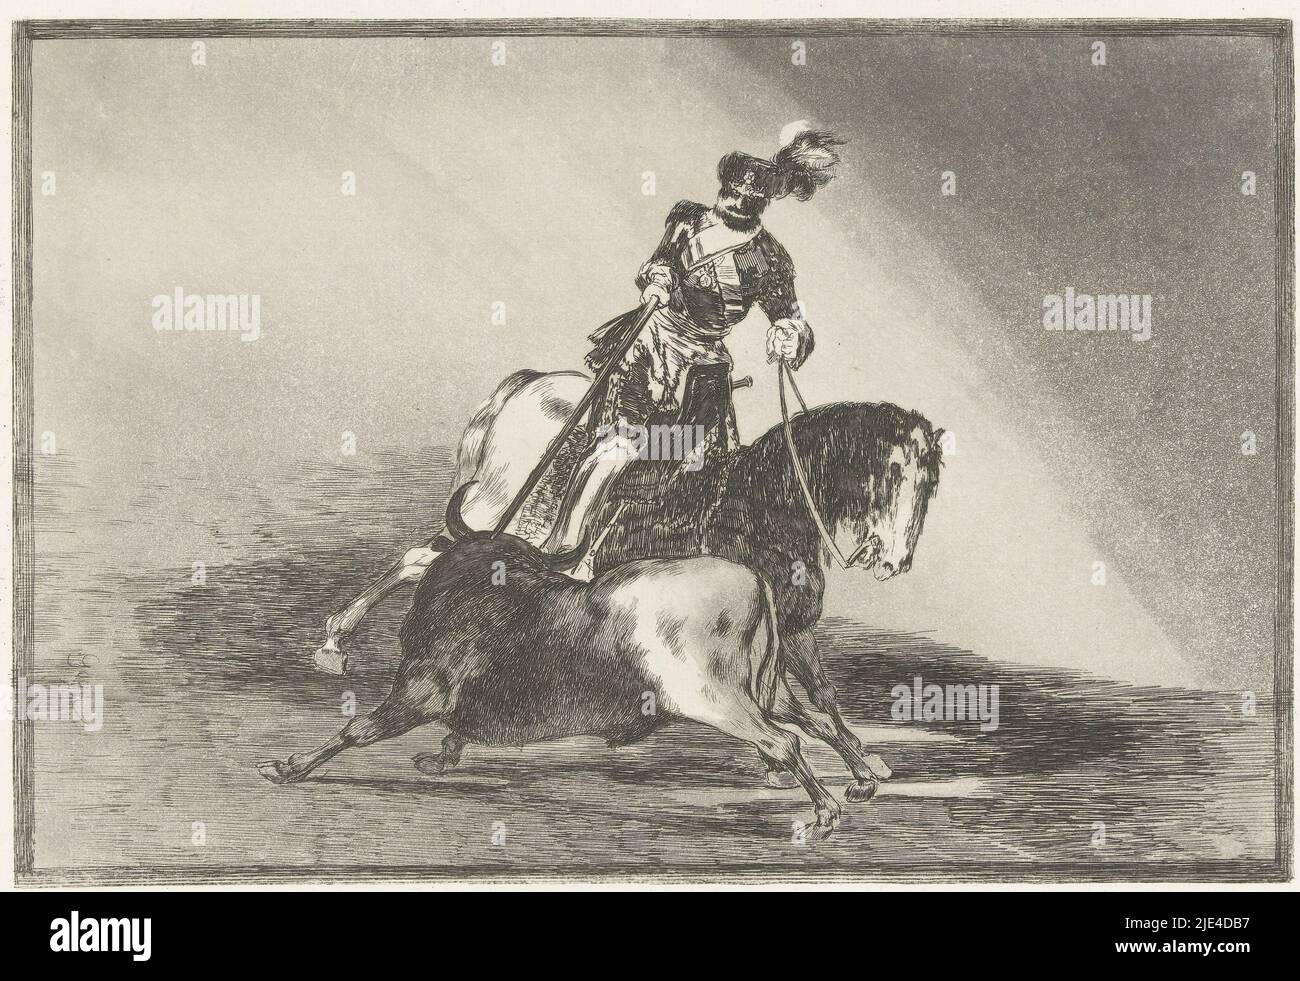 L'empereur Charles V au combat avec un taureau, Francisco de Goya, 1811 - 1816, l'empereur Charles V assis sur un cheval tout en poignardant une lance dans le cou d'un taureau., imprimeur: Francisco de Goya, (mentionné sur l'objet), Francisco de Goya, Espagne, 1811 - 1816, papier, gravure, pointe sèche, h 250 mm × l 350 mm Banque D'Images